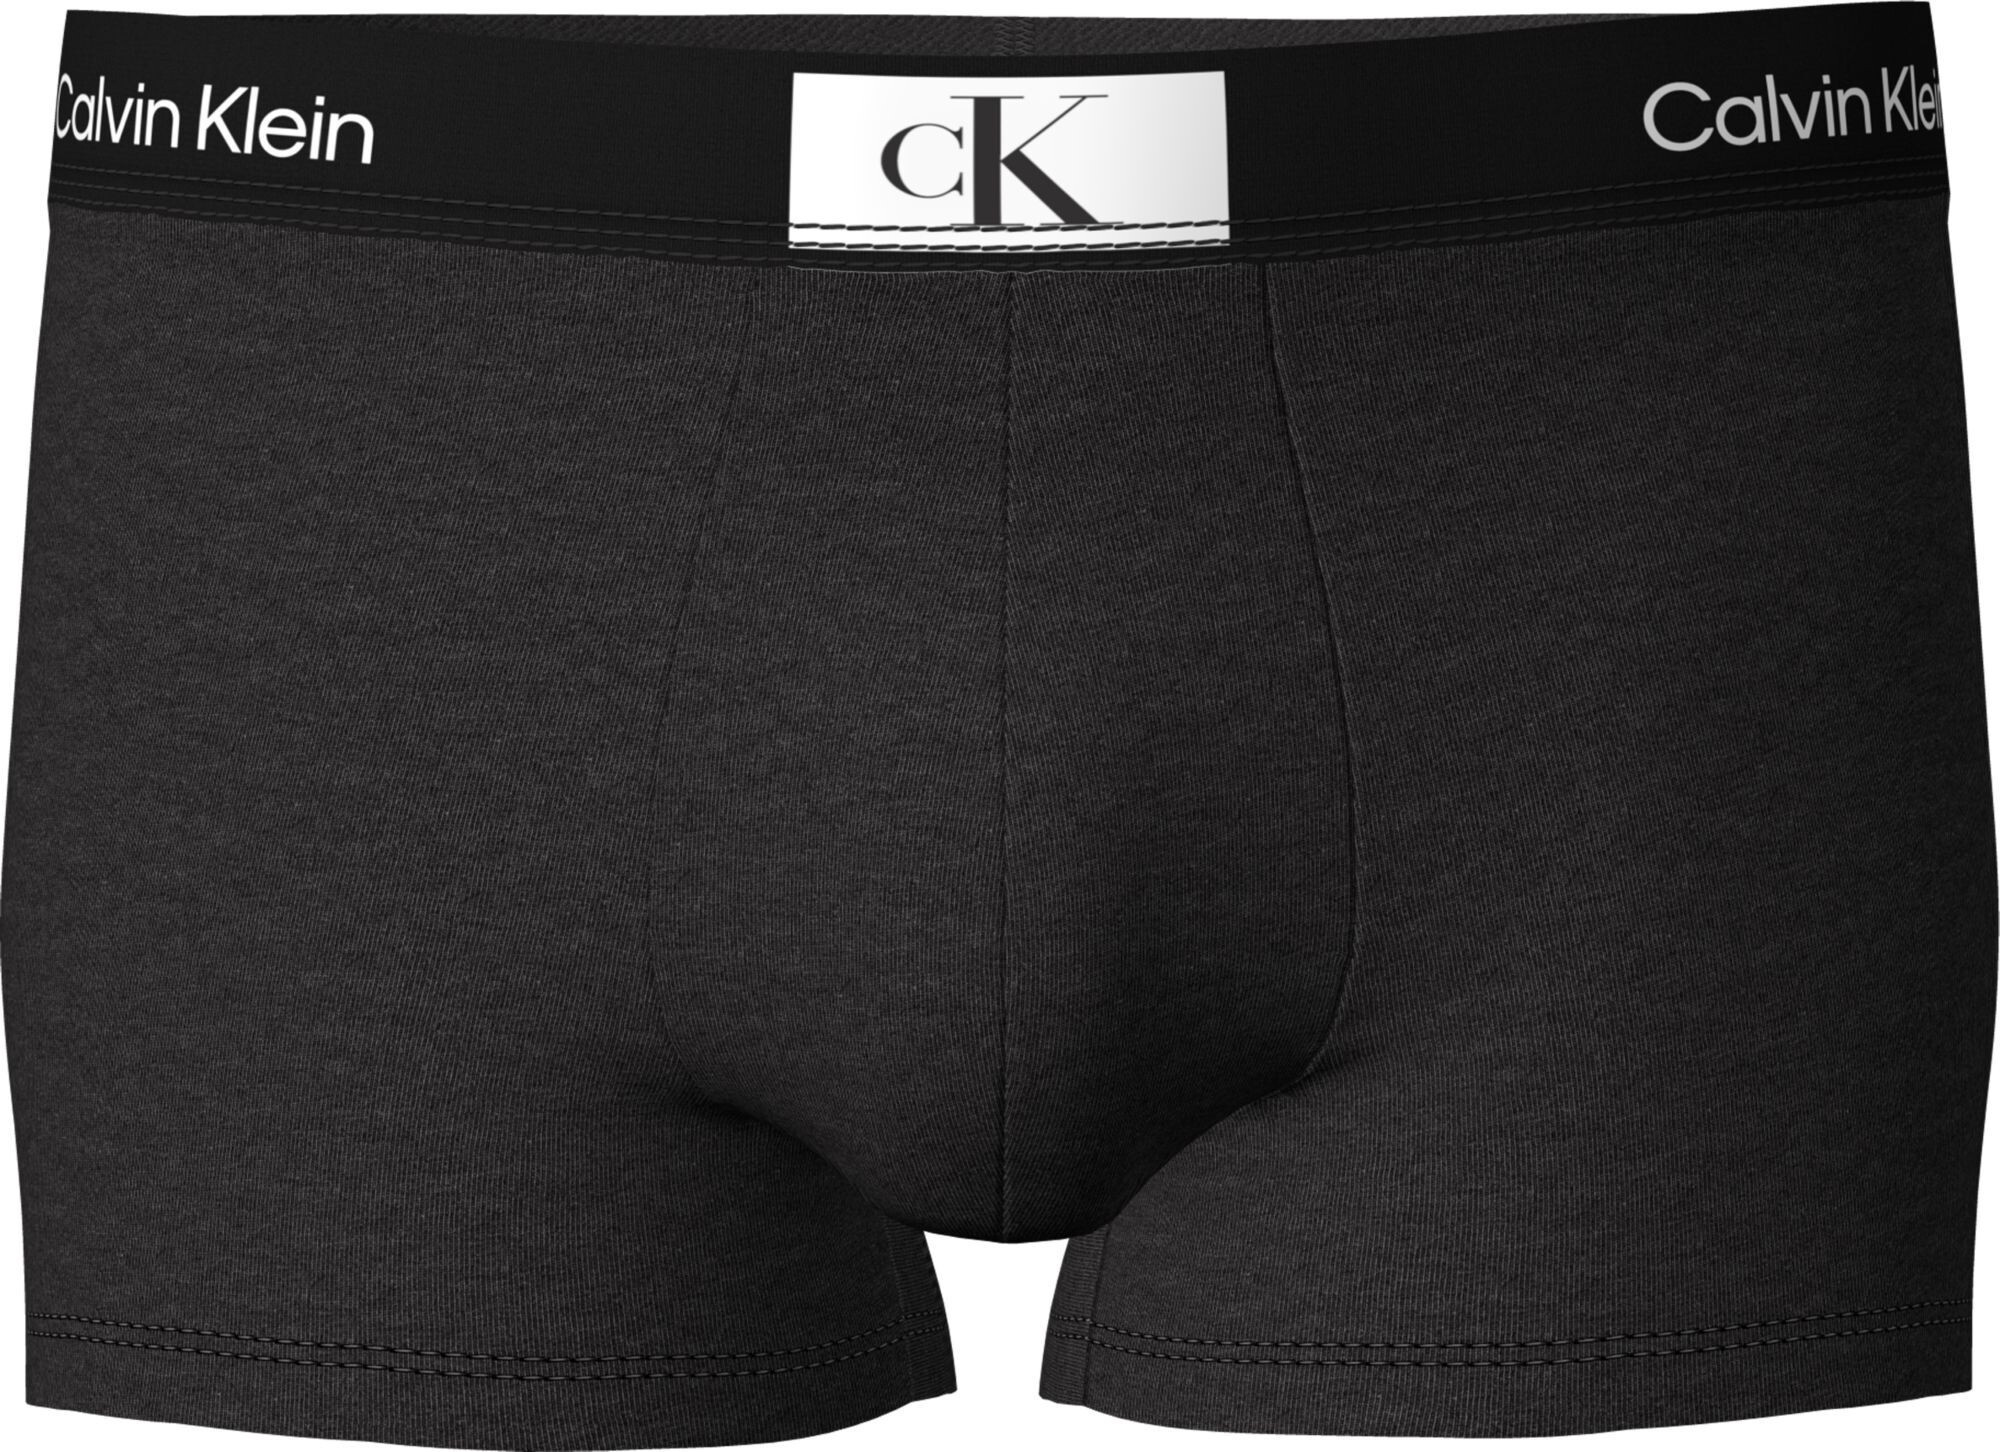 Pánské boxerky Calvin Klein s krátkou nohavičkou NB3403A černá XL